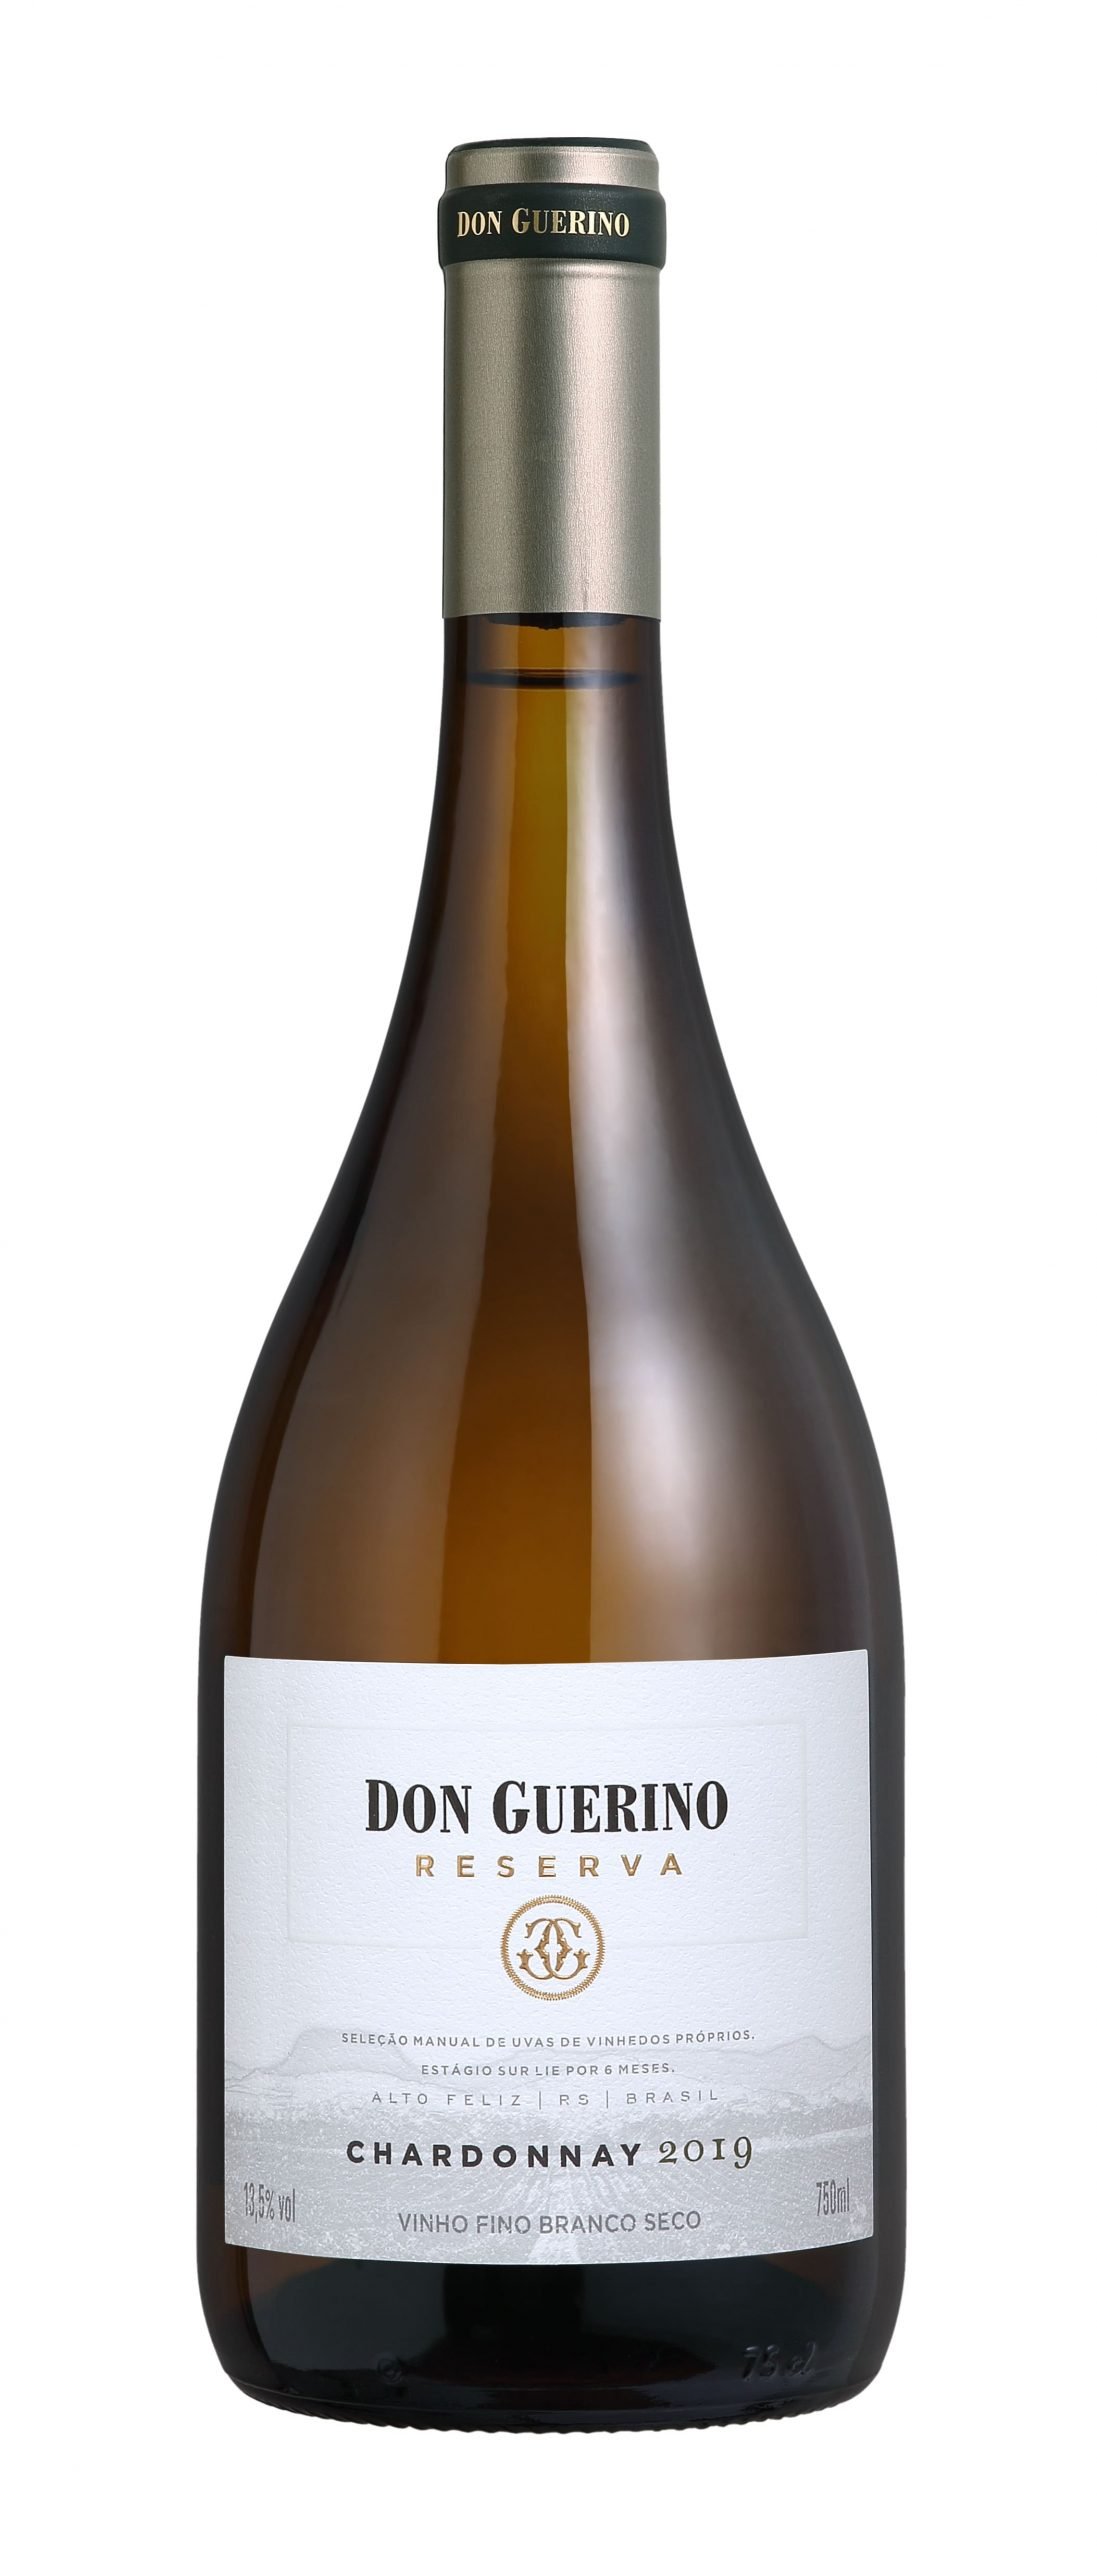 Garrafa de Vinho Branco Fino Seco Chardonnay Reserva Don Guerino